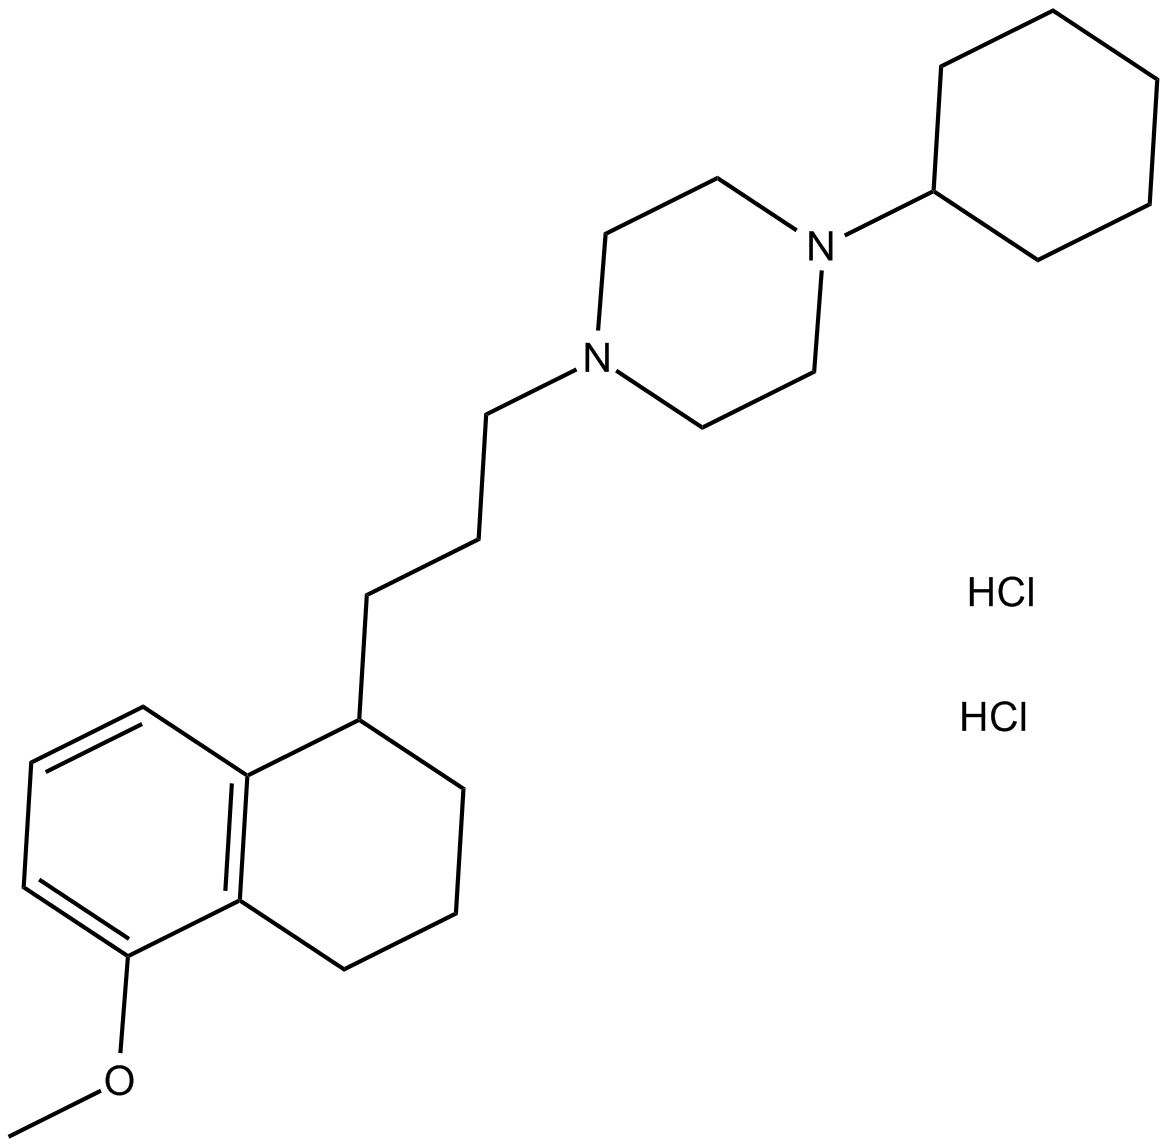 PB 28 dihydrochloride